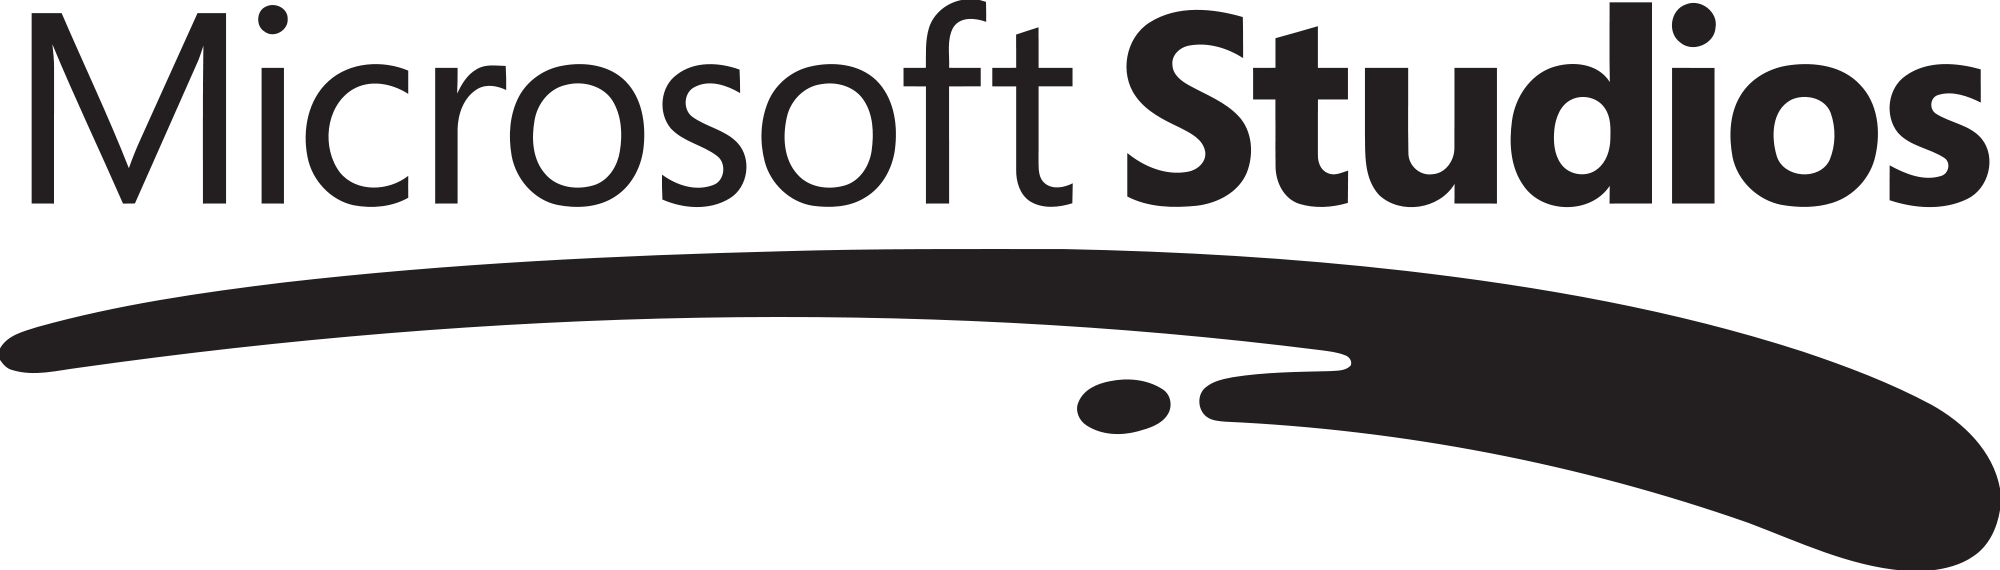 Microsoft Studios Logo - Microsoft Studios Logo.png